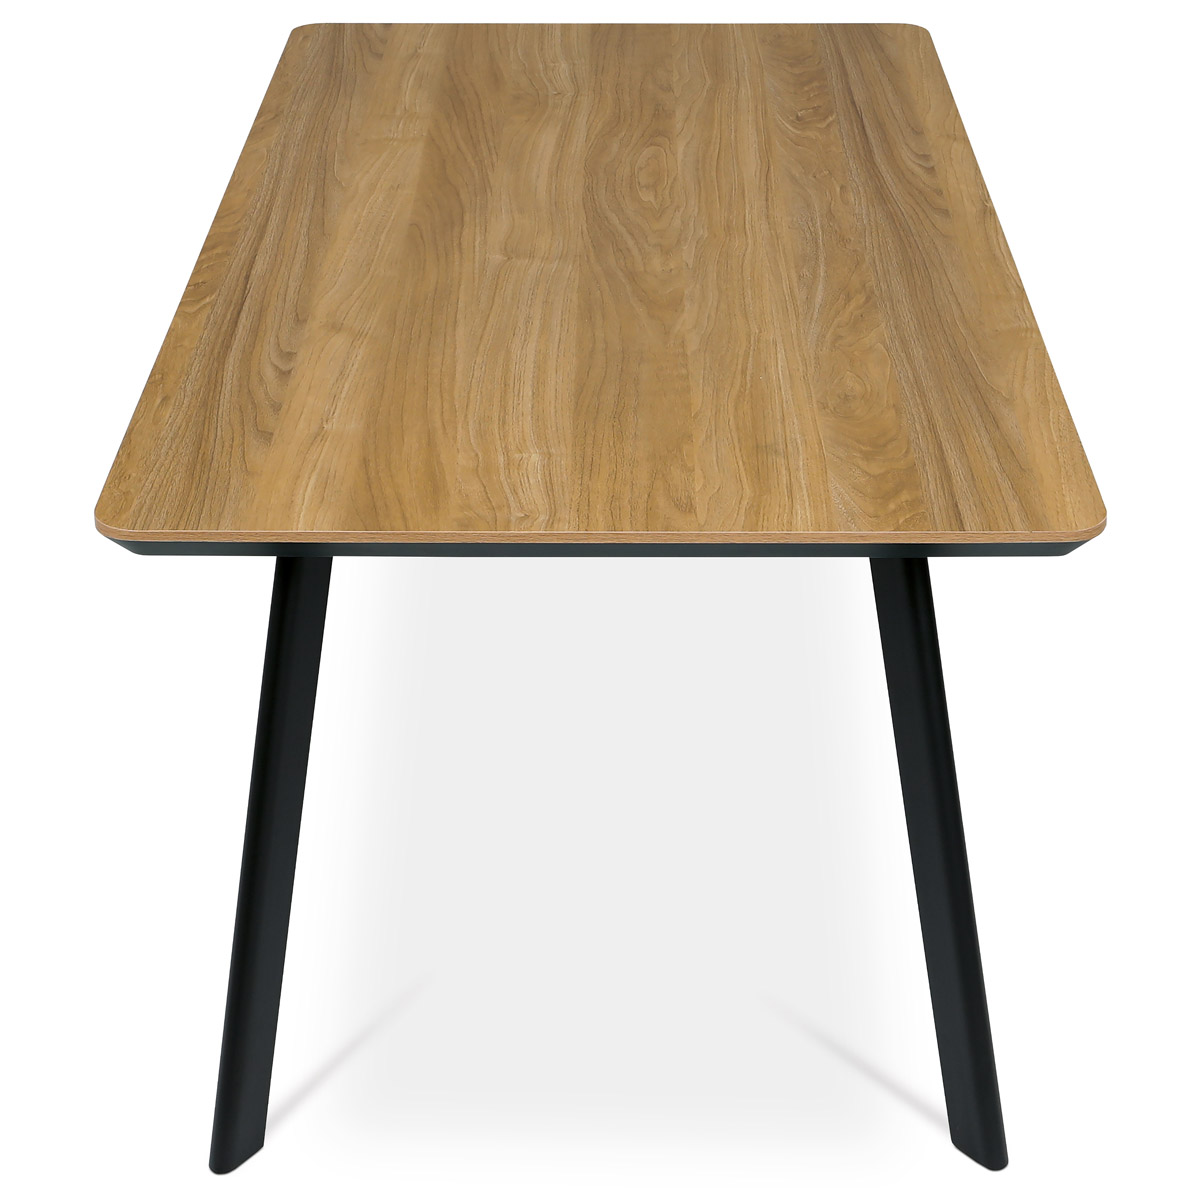 Jídelní stůl, 160x90x76 cm, MDF deska, dýha ostín dub, kovové nohy, černý lak